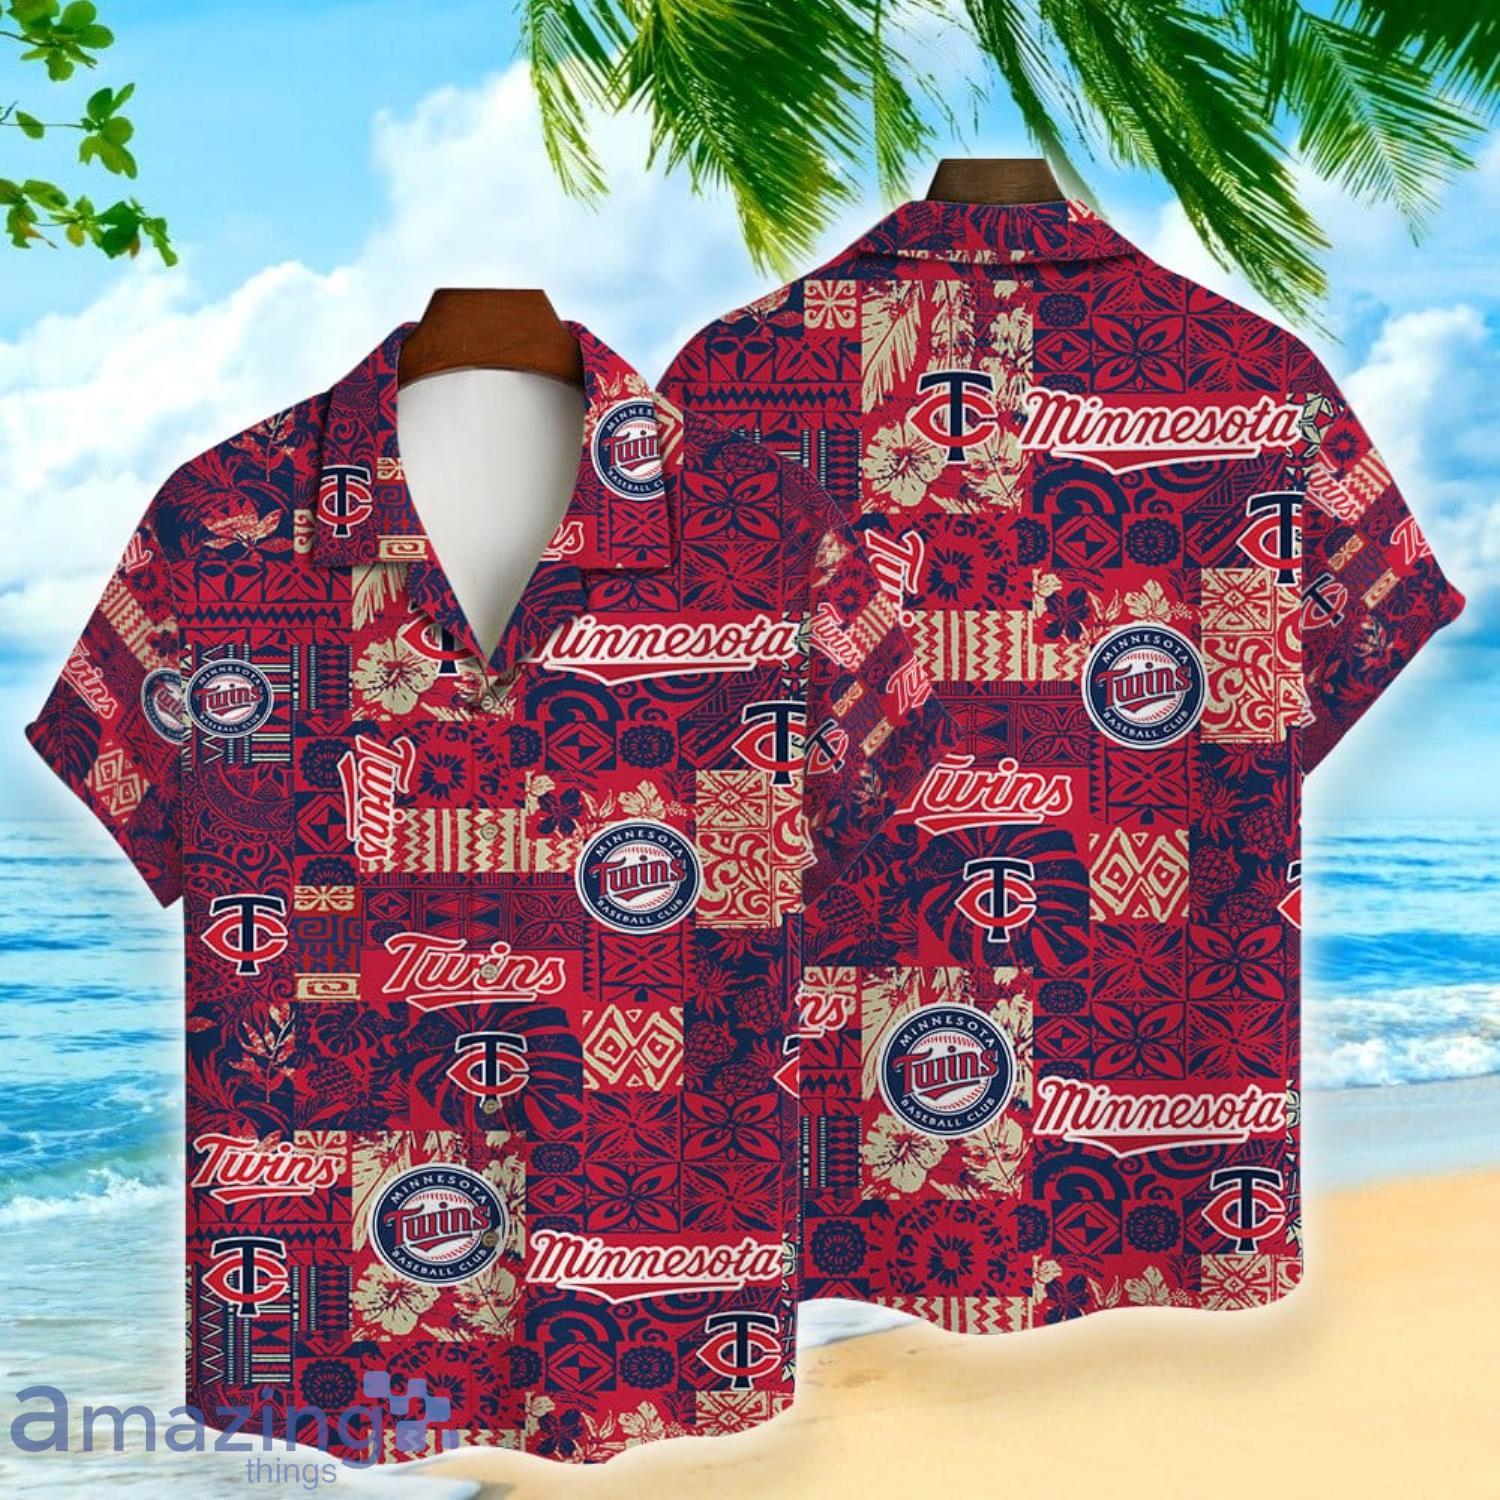 Minnesota Twins Baseball Fans Major League 3D Print Hawaiian Shirt For Men  And Women